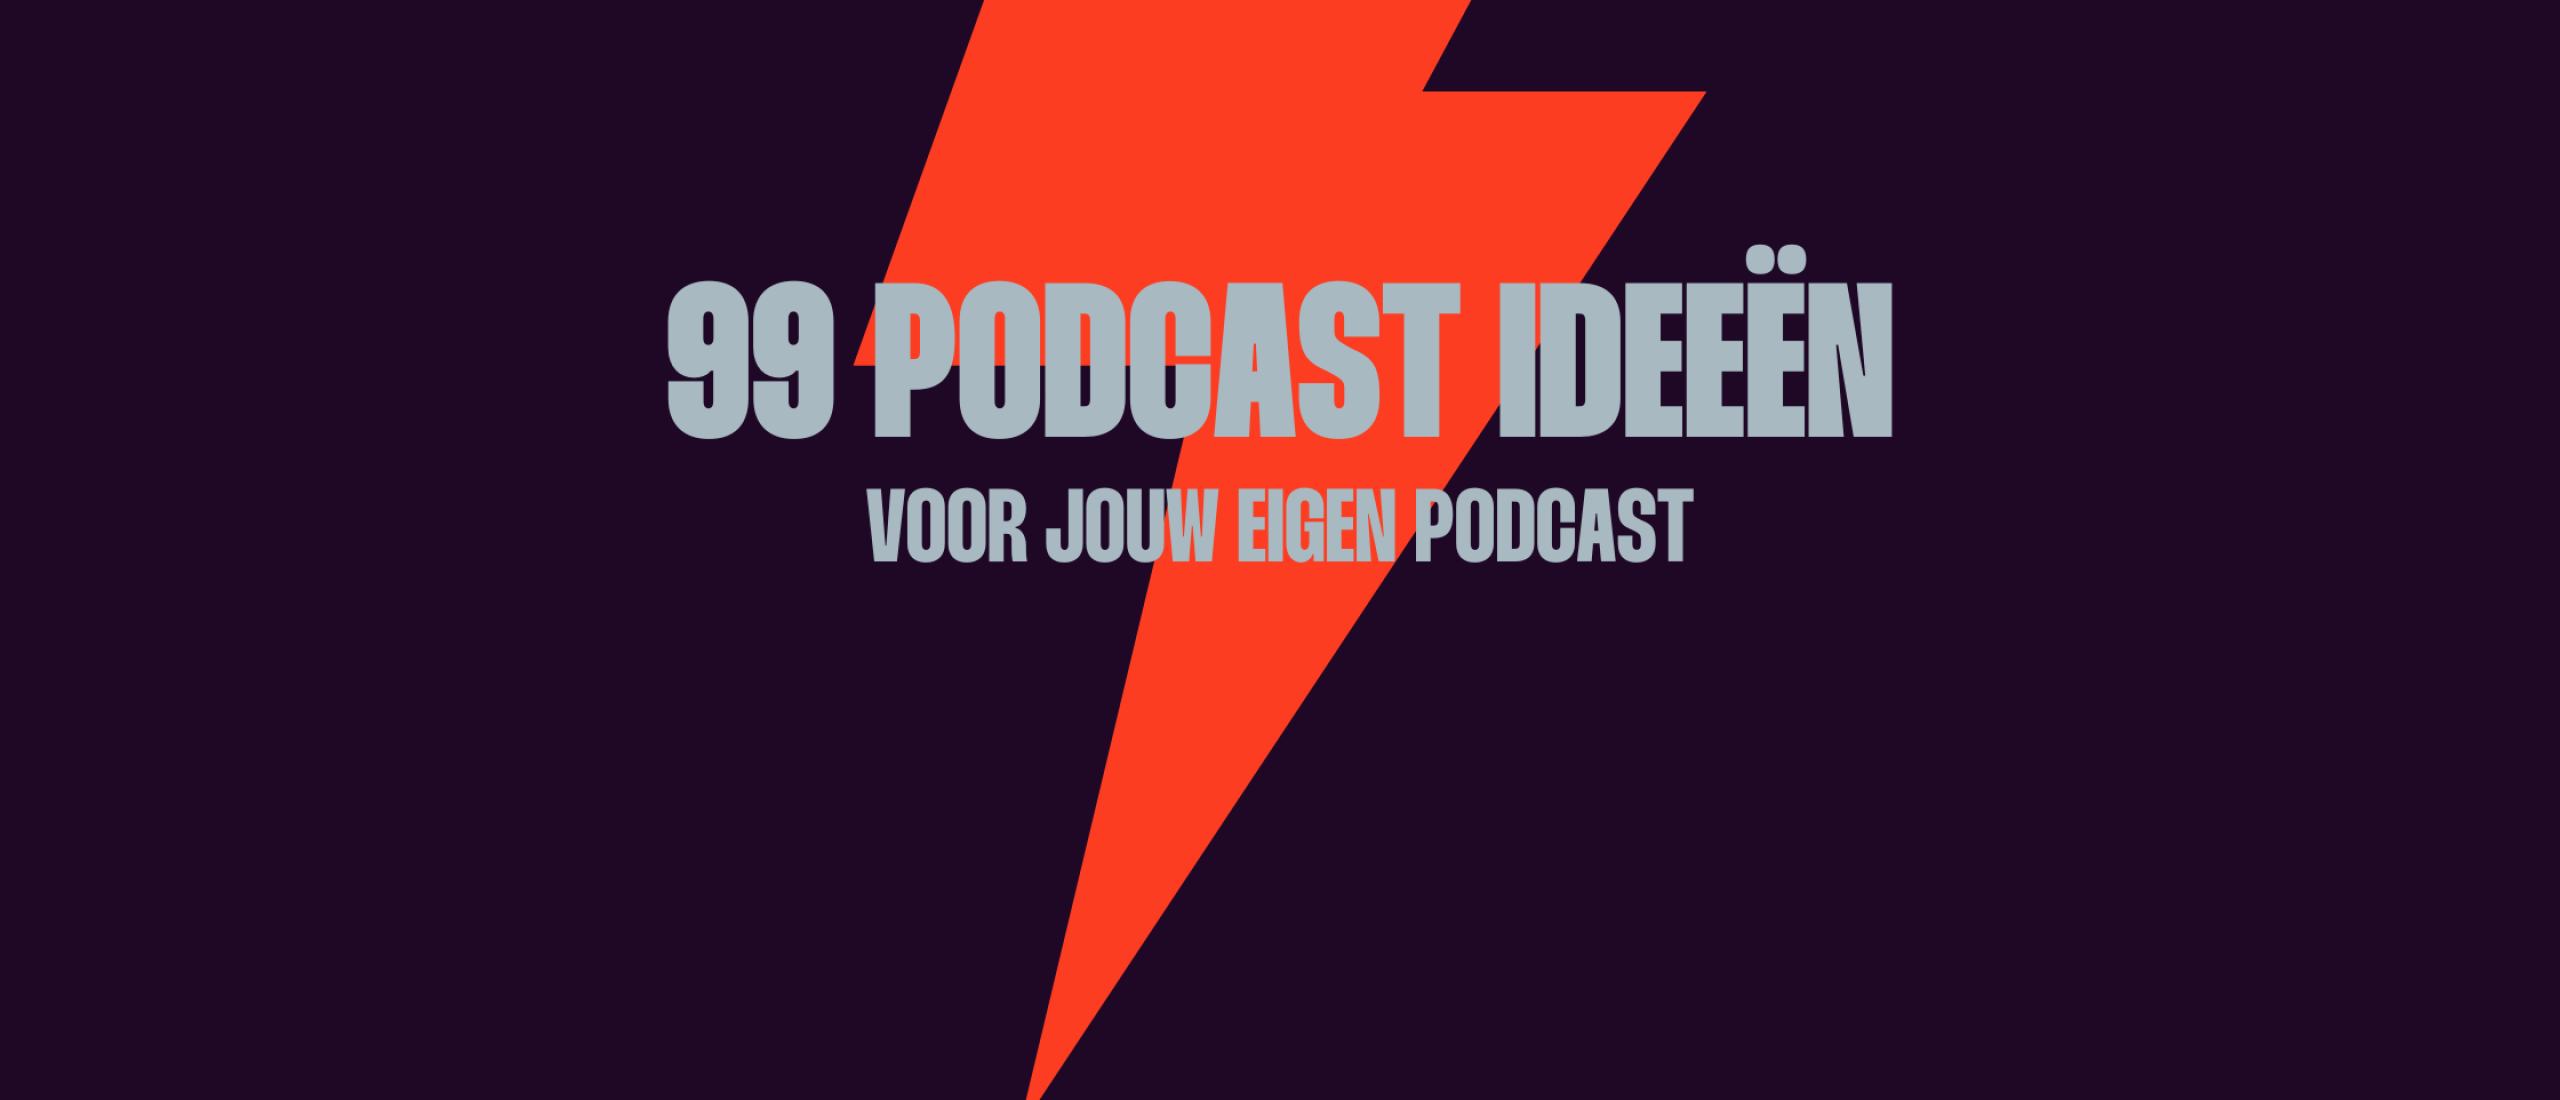 99 podcast ideeën voor jouw eigen podcast